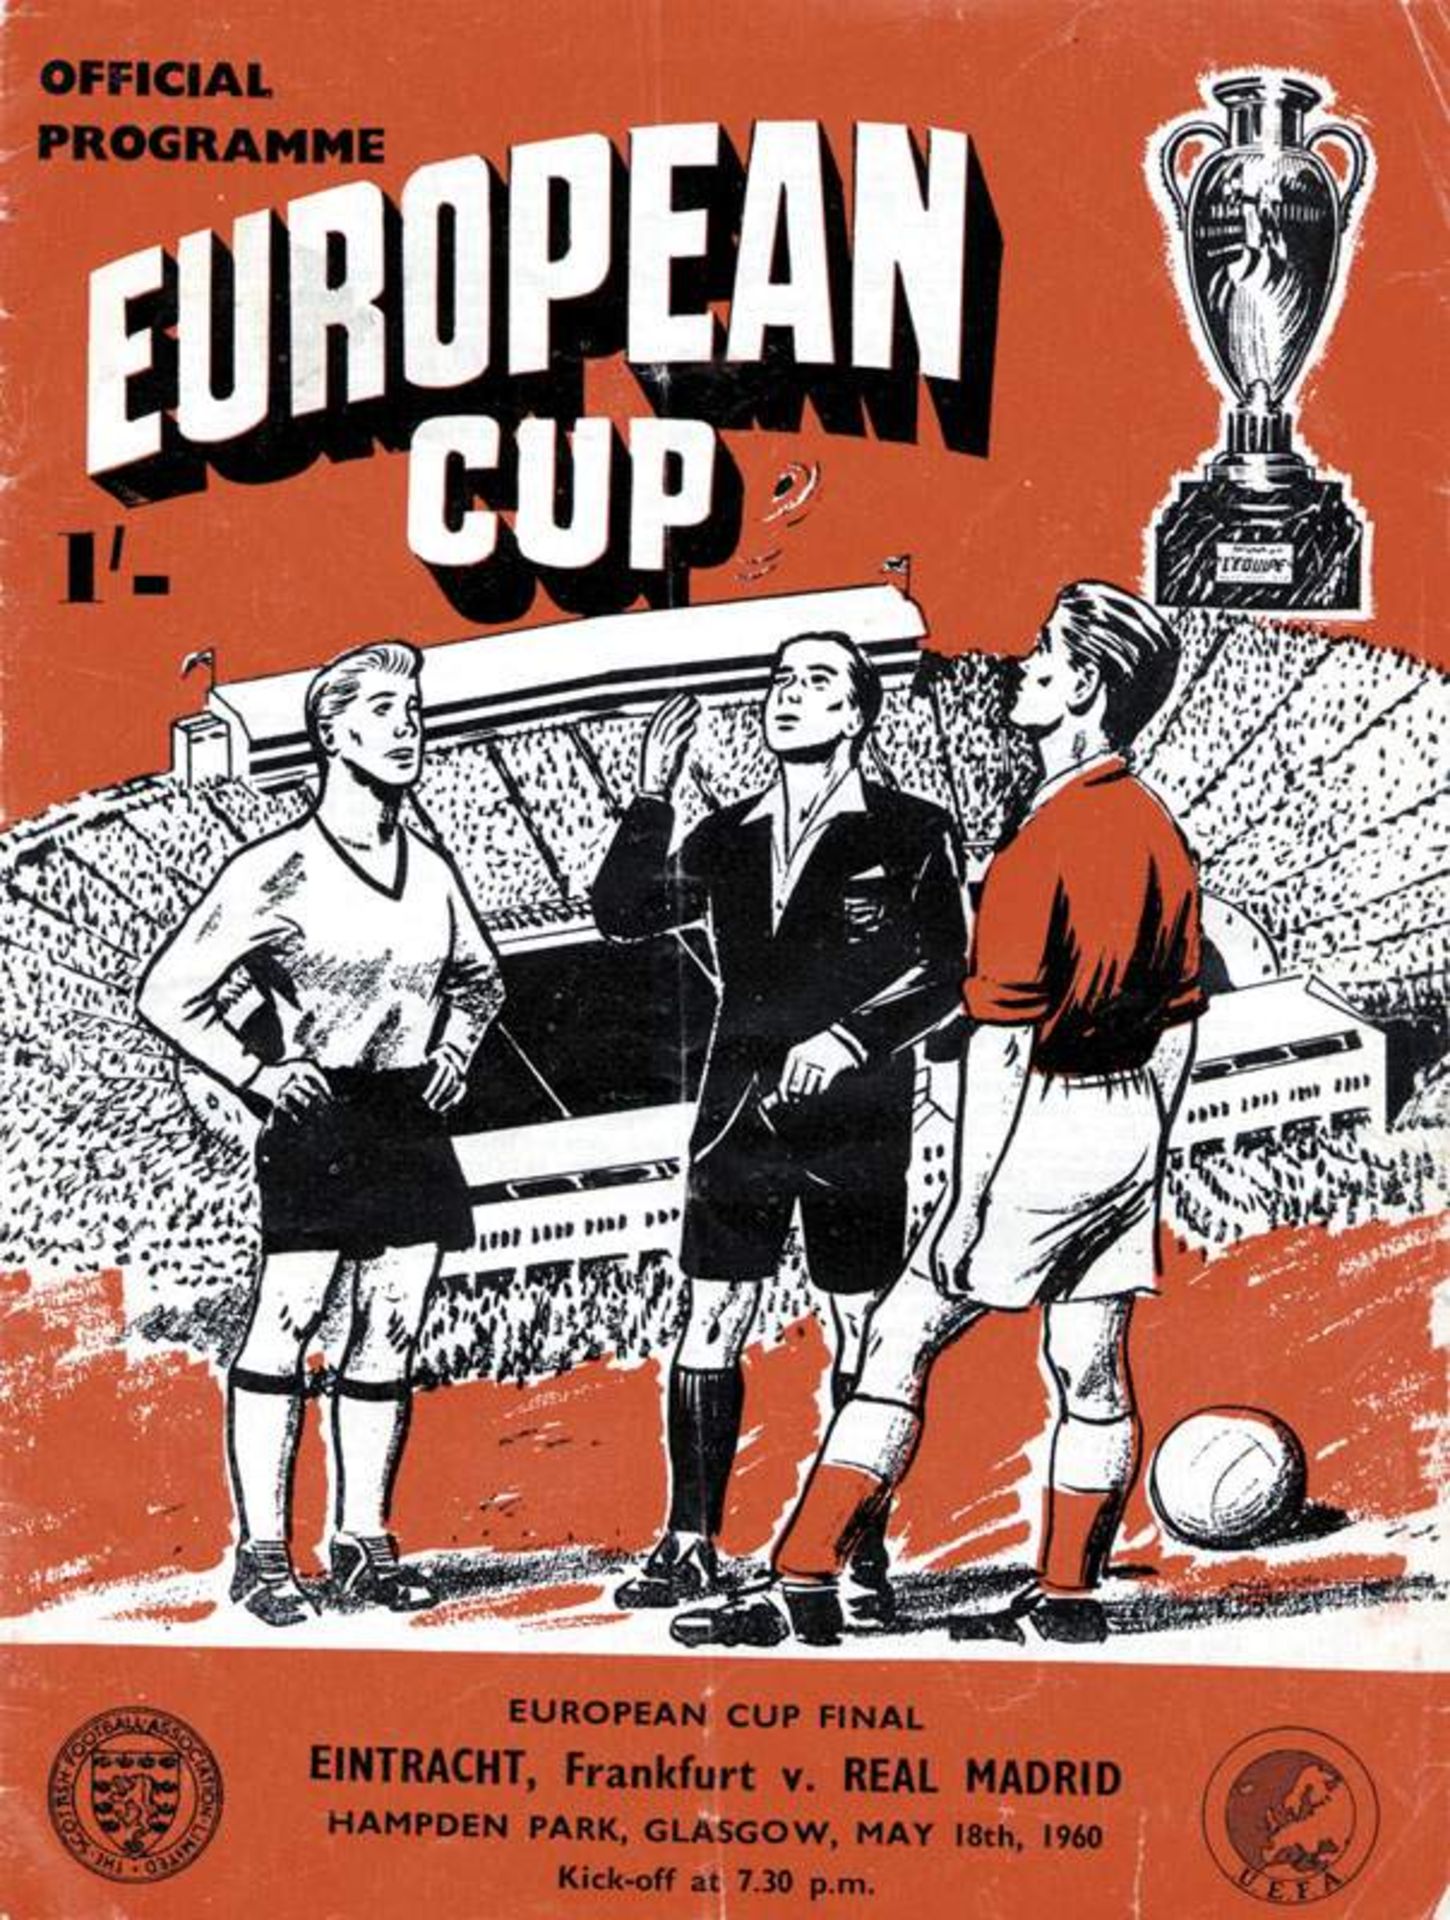 Europcup Final 1960 Programm Frankfurt v Madrid - Eintracht Frankfurt vs Real Madrid May 18, 1960 in